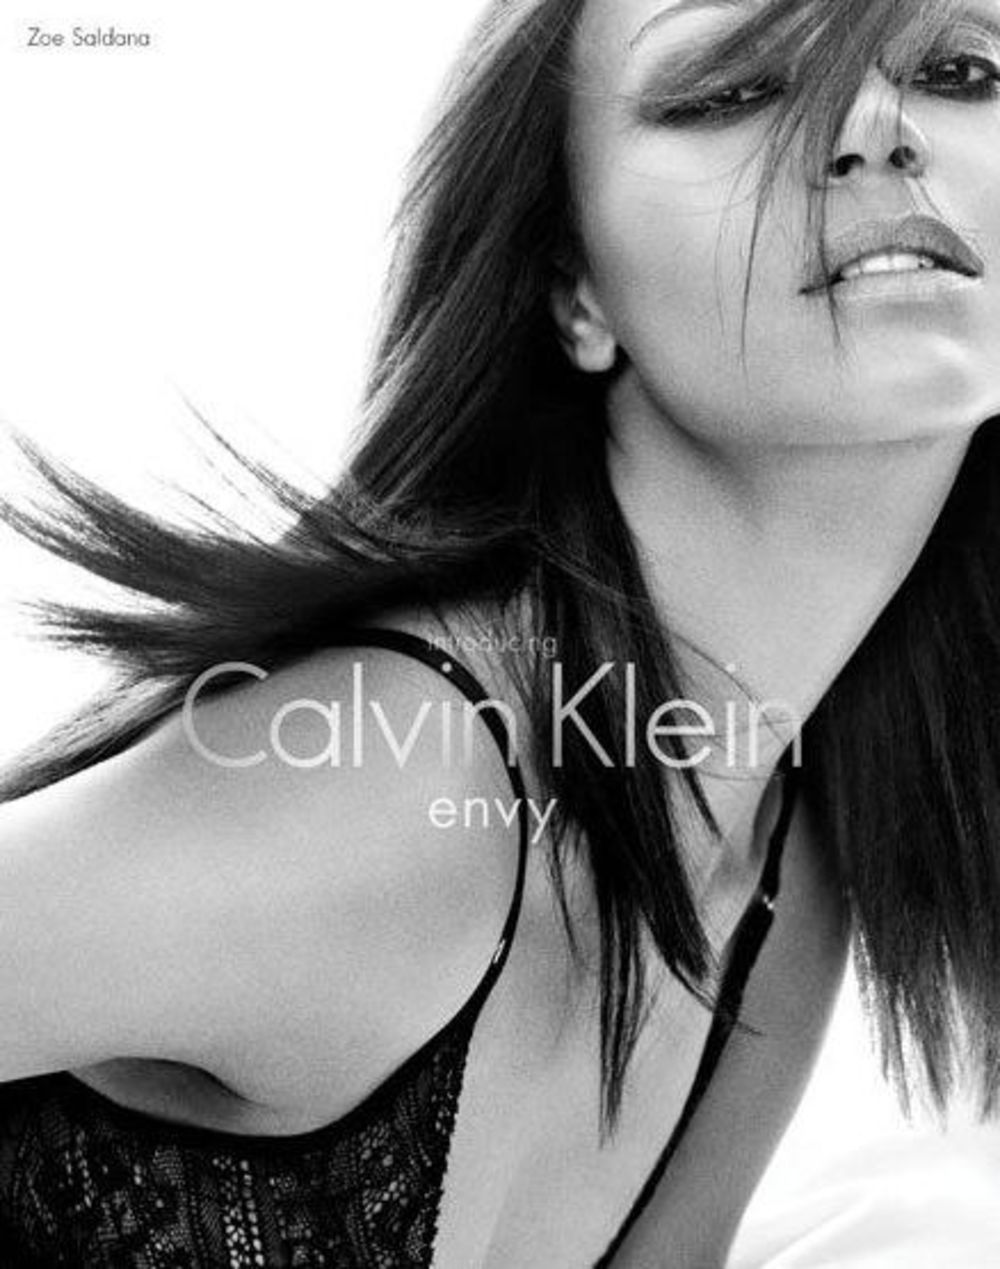 Zvezda Avatara, glumica Zoe Saldana, oduševila je svoje obožavaoce fotografijama za novu kolekciju donjeg veša modne kuće Calvin Klein